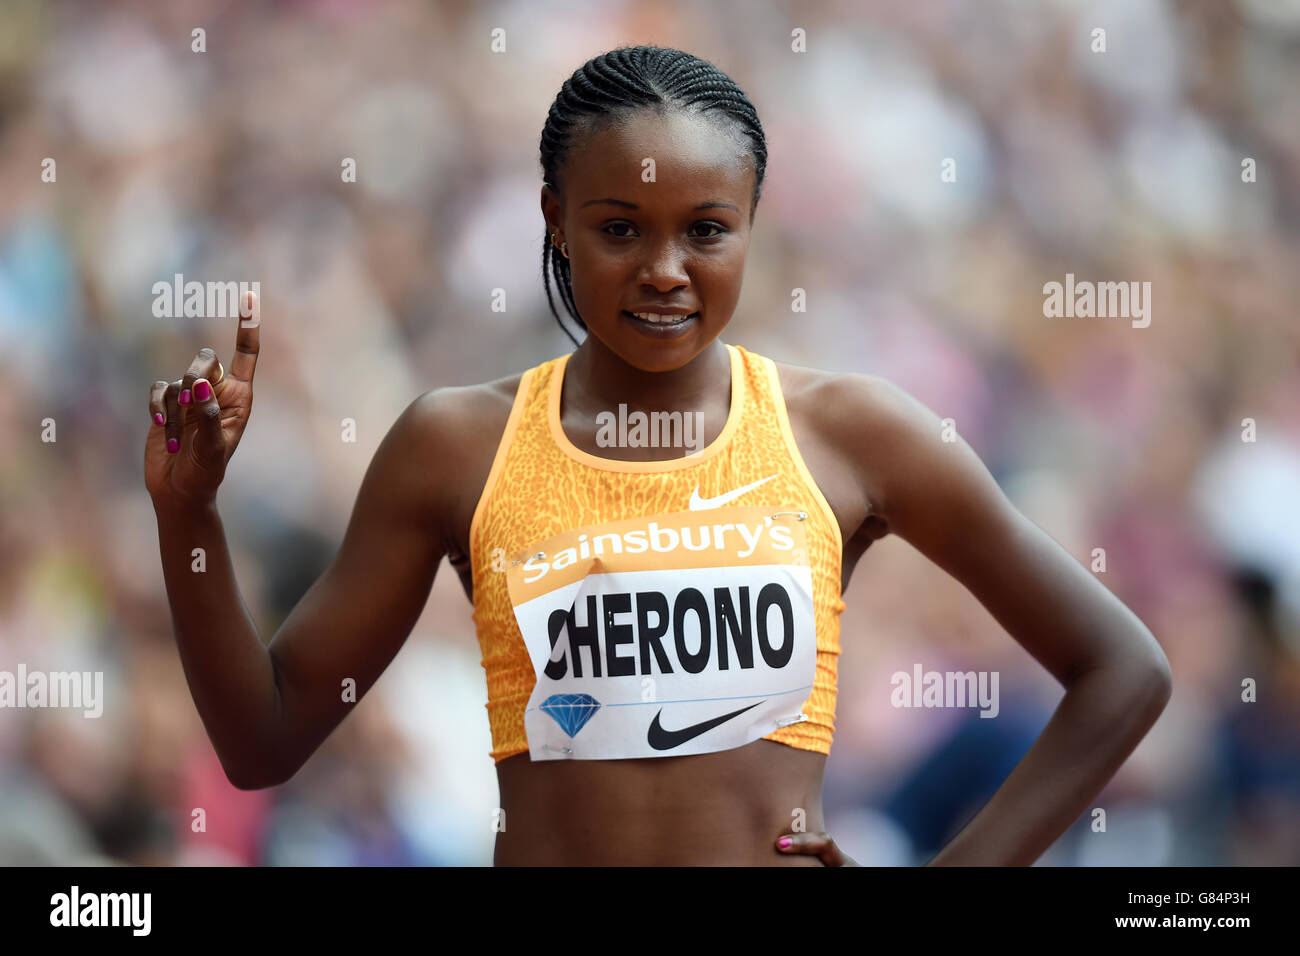 Le Kenya Mercy Cherono Koech célèbre la victoire des 5000m féminins lors du deuxième jour des Jeux d'anniversaire de Sainsbury au stade du parc olympique Queen Elizabeth, Londres. Banque D'Images